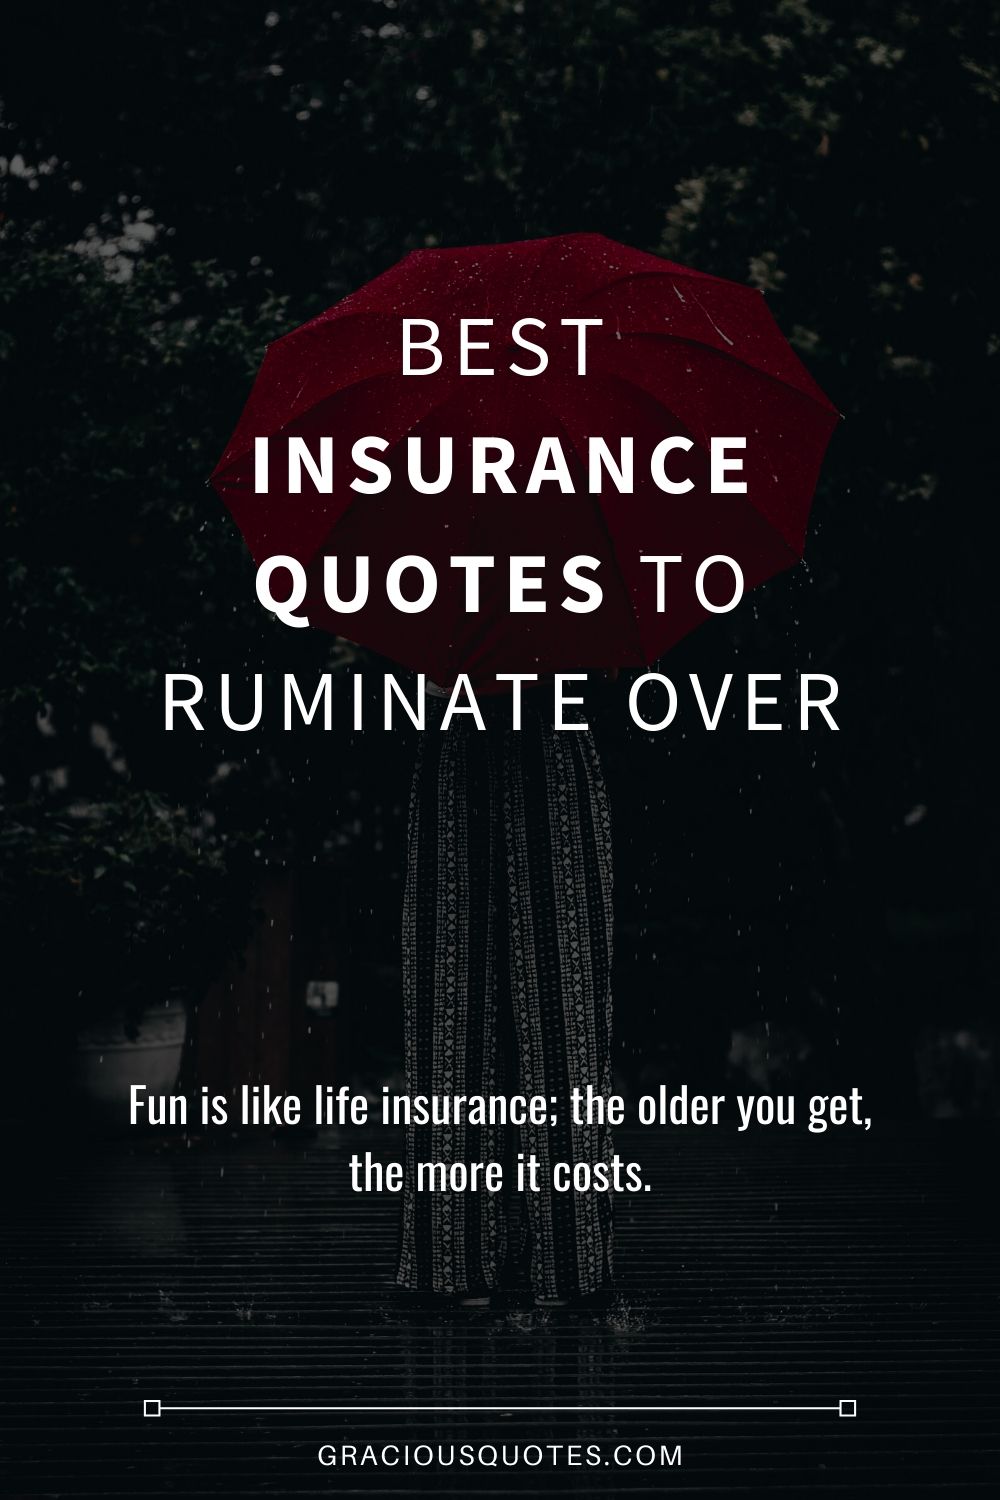 Paul B Insurance